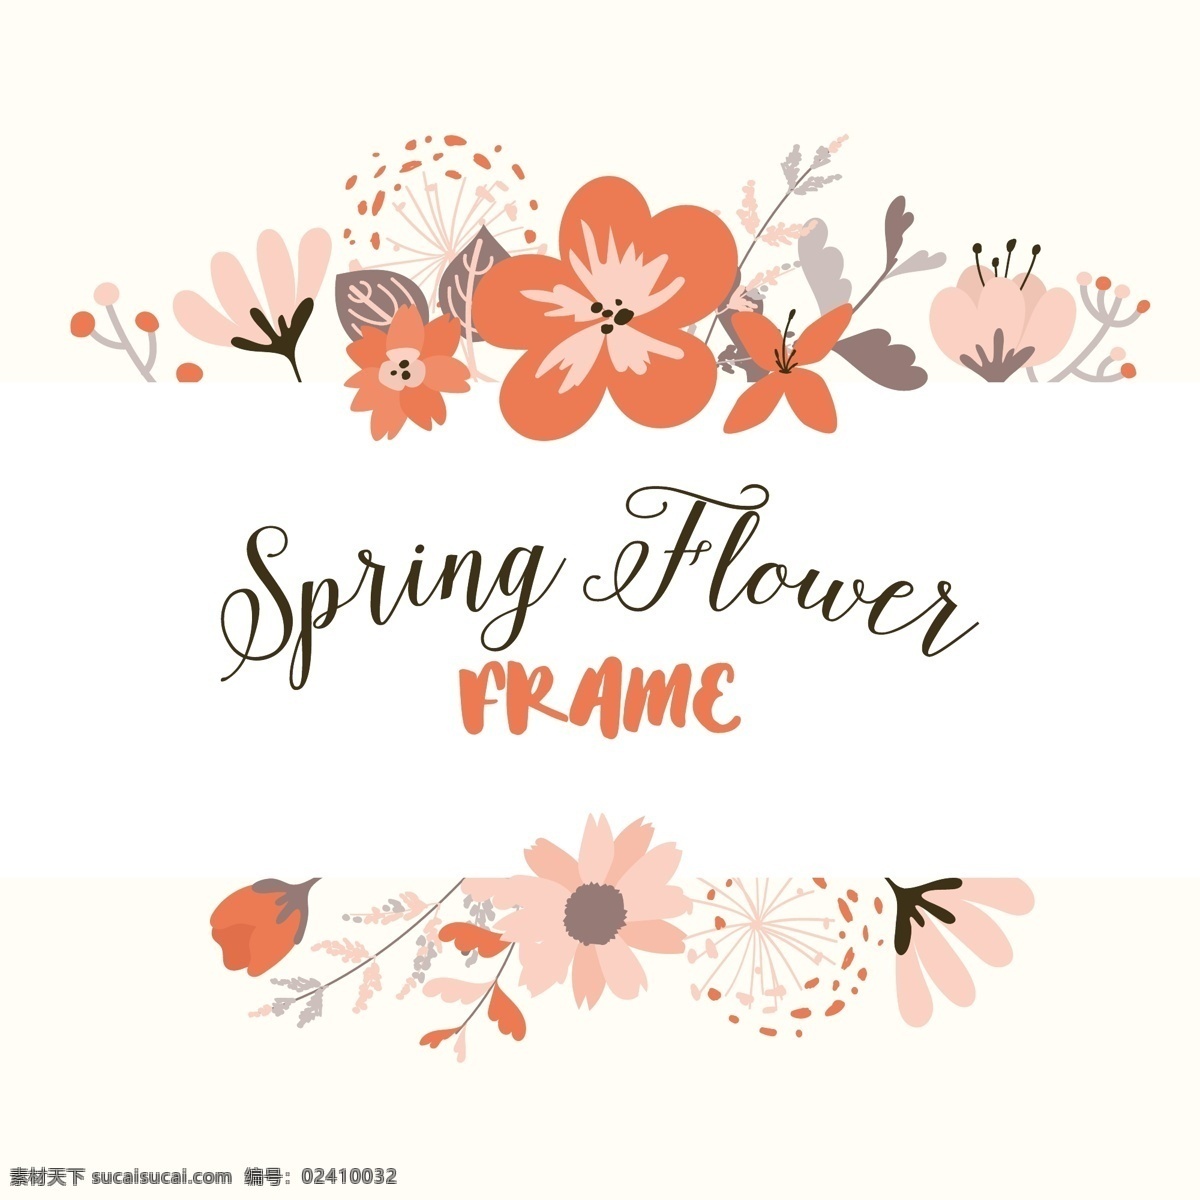 春花架背景 背景 花卉 边框 卡片 模板 叶子 自然 手绘 春天 树叶 植物 装饰 浪漫 绽放 美丽